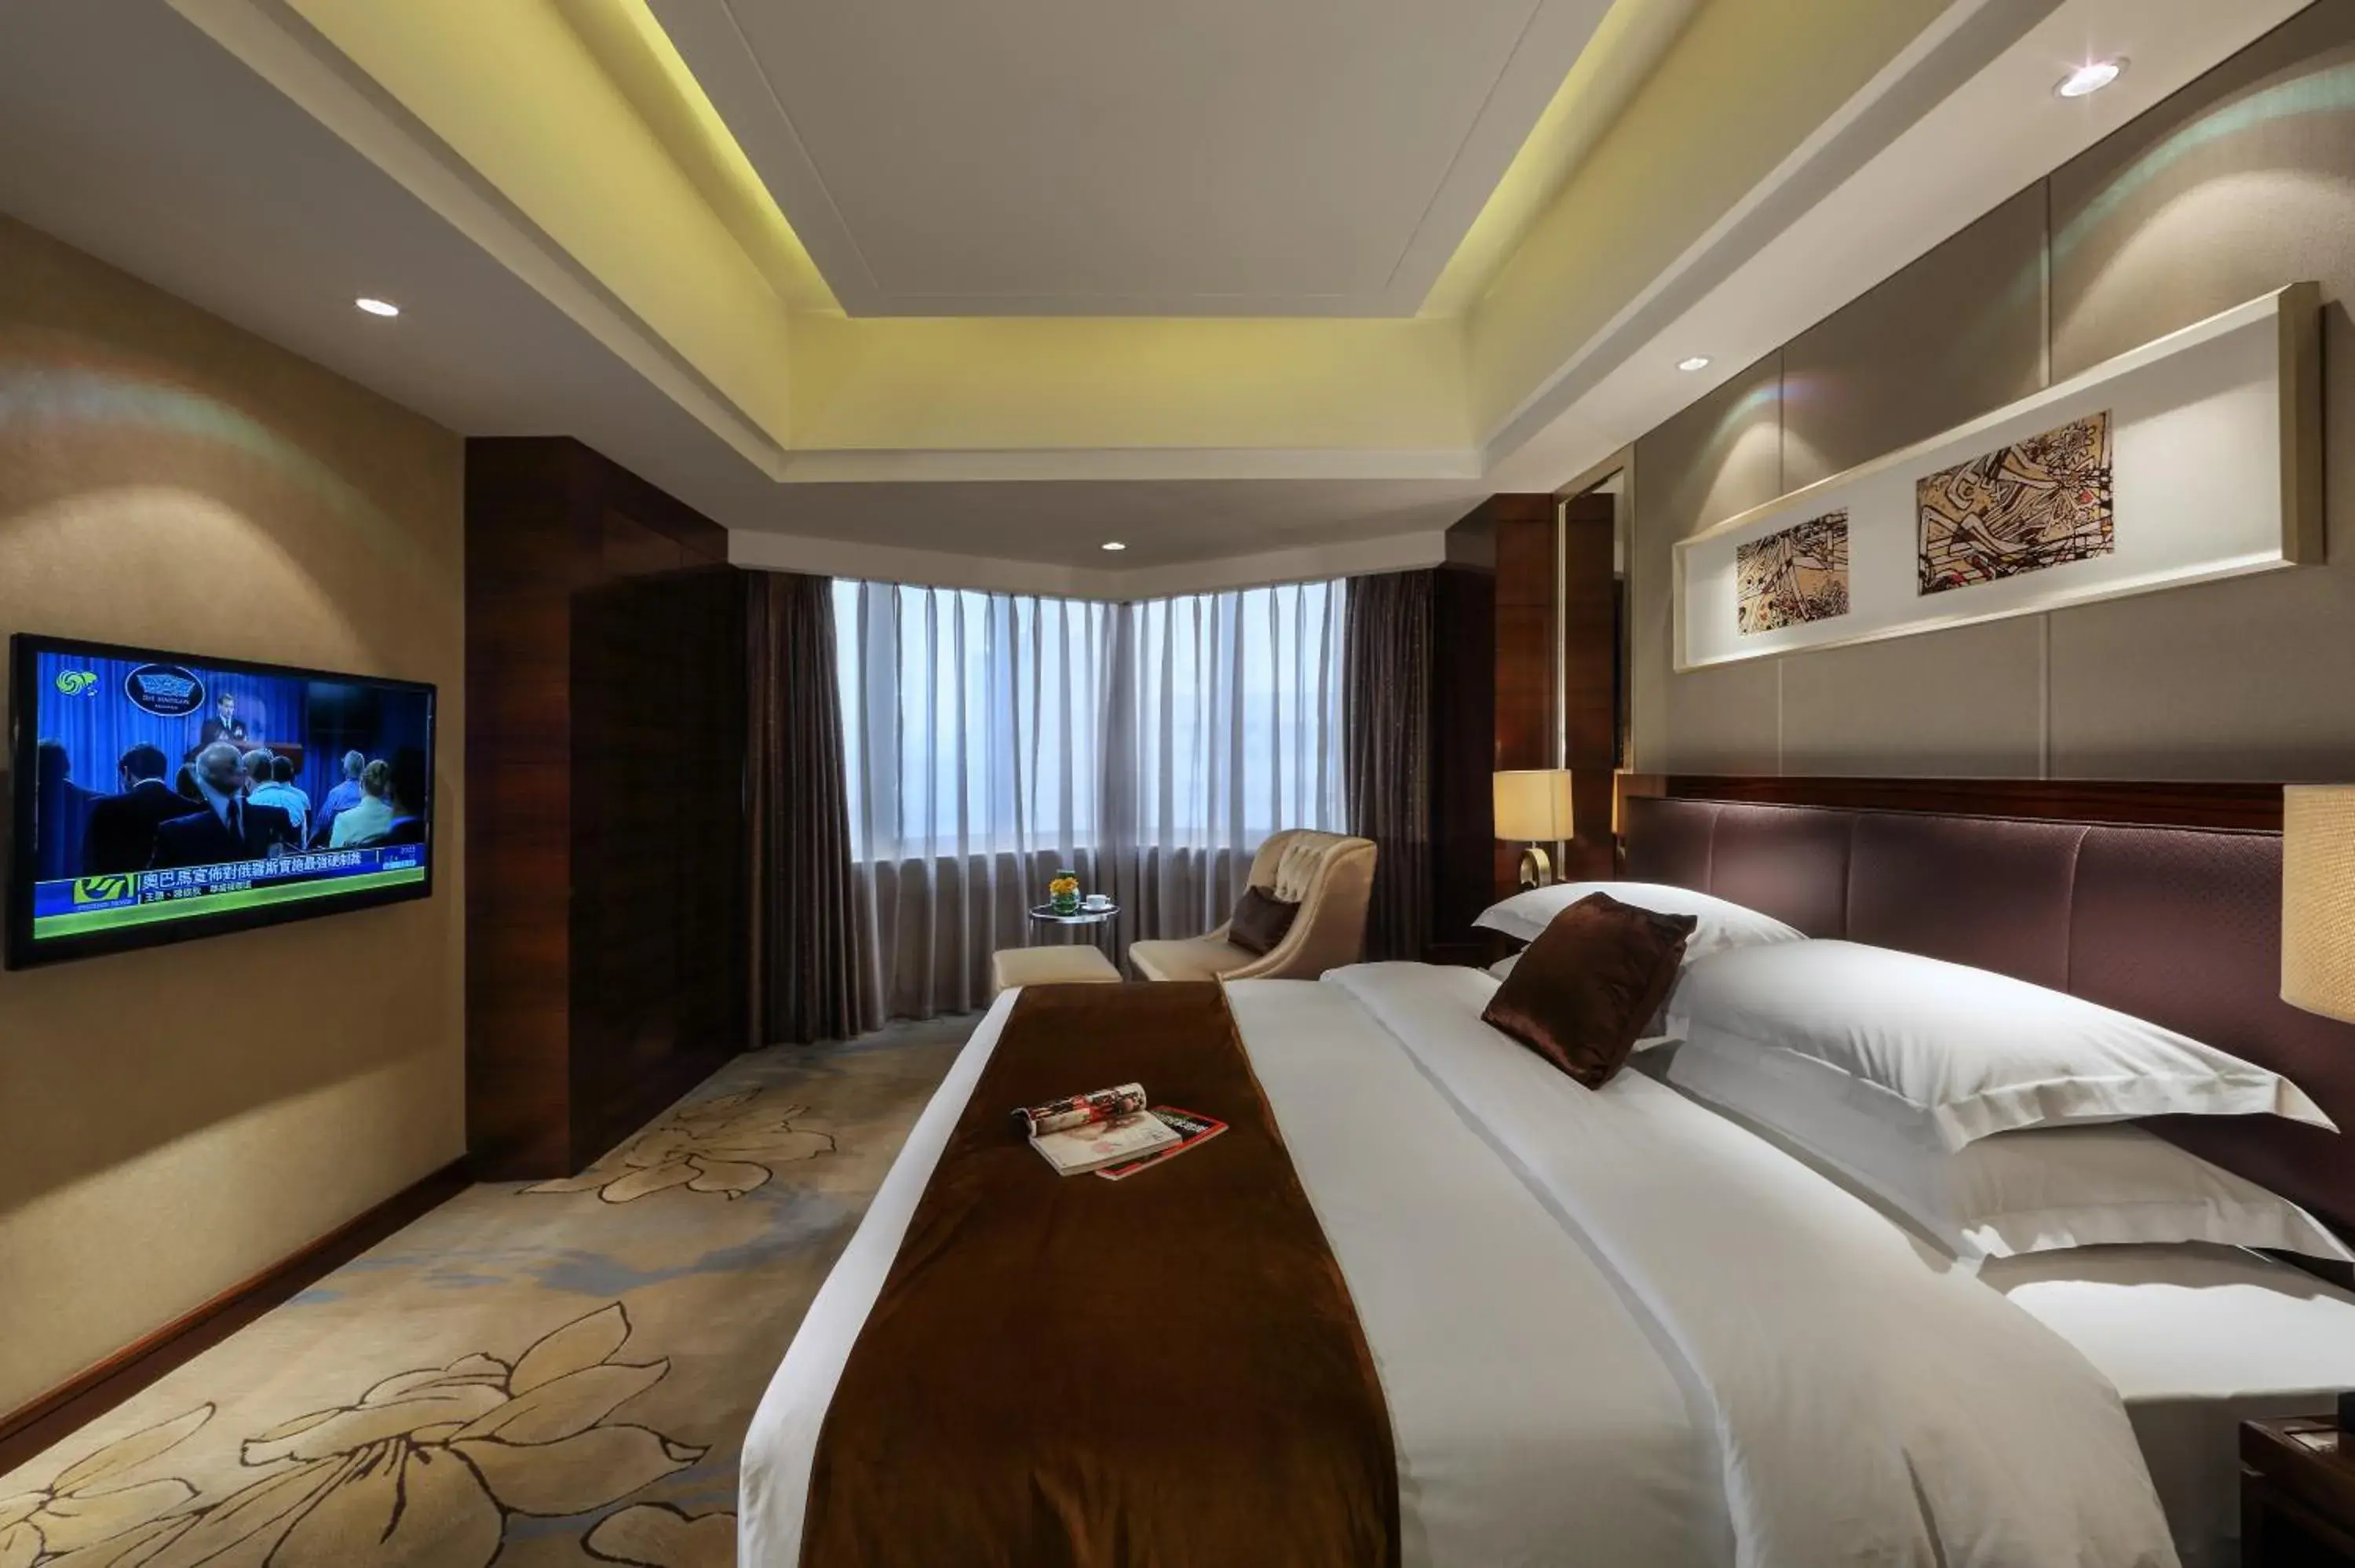 Bedroom, TV/Entertainment Center in Kunming Haitian Hotel